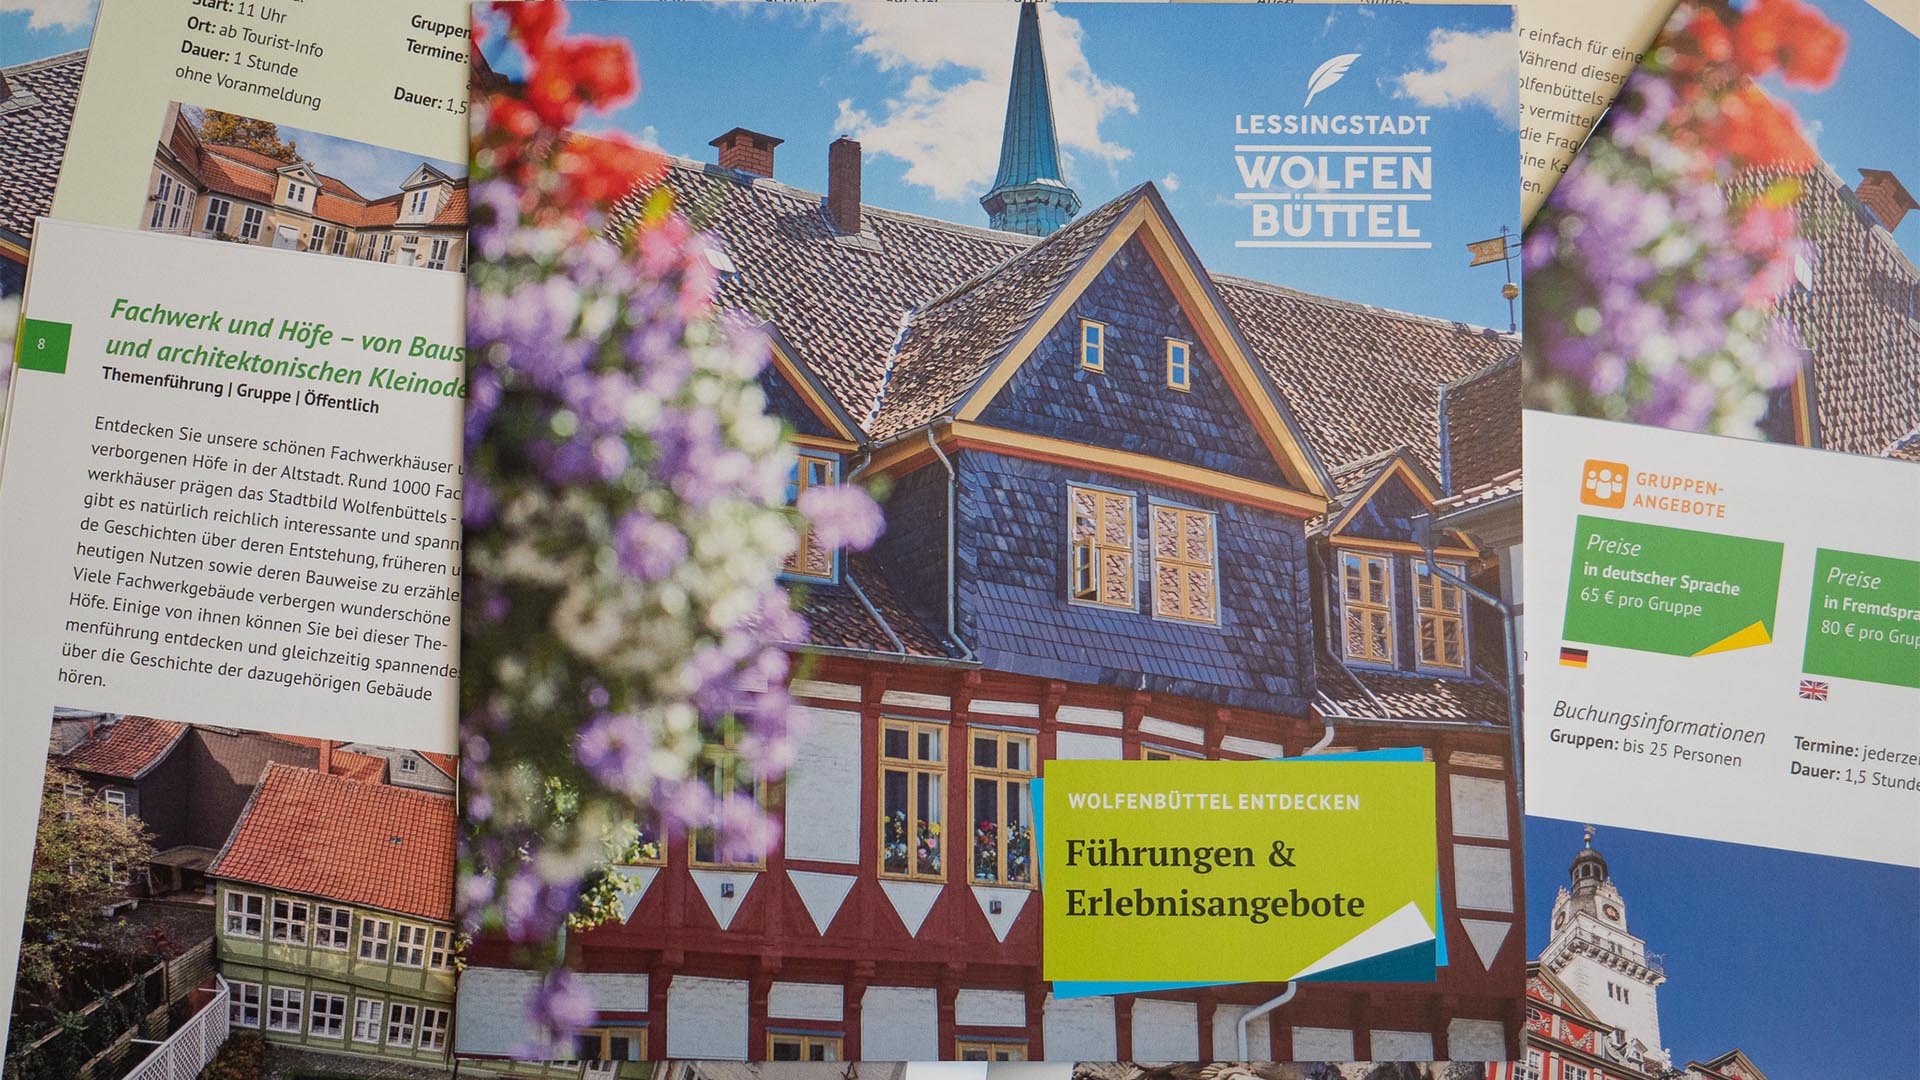 Die Broschüre "Wolfenbüttel entdecken" liegt auf einigen aufgeschlagenen Exemplaren, sodass man sowohl das Titelbild als uch einige Ausschnitte der Innenseiten erkennen kann.